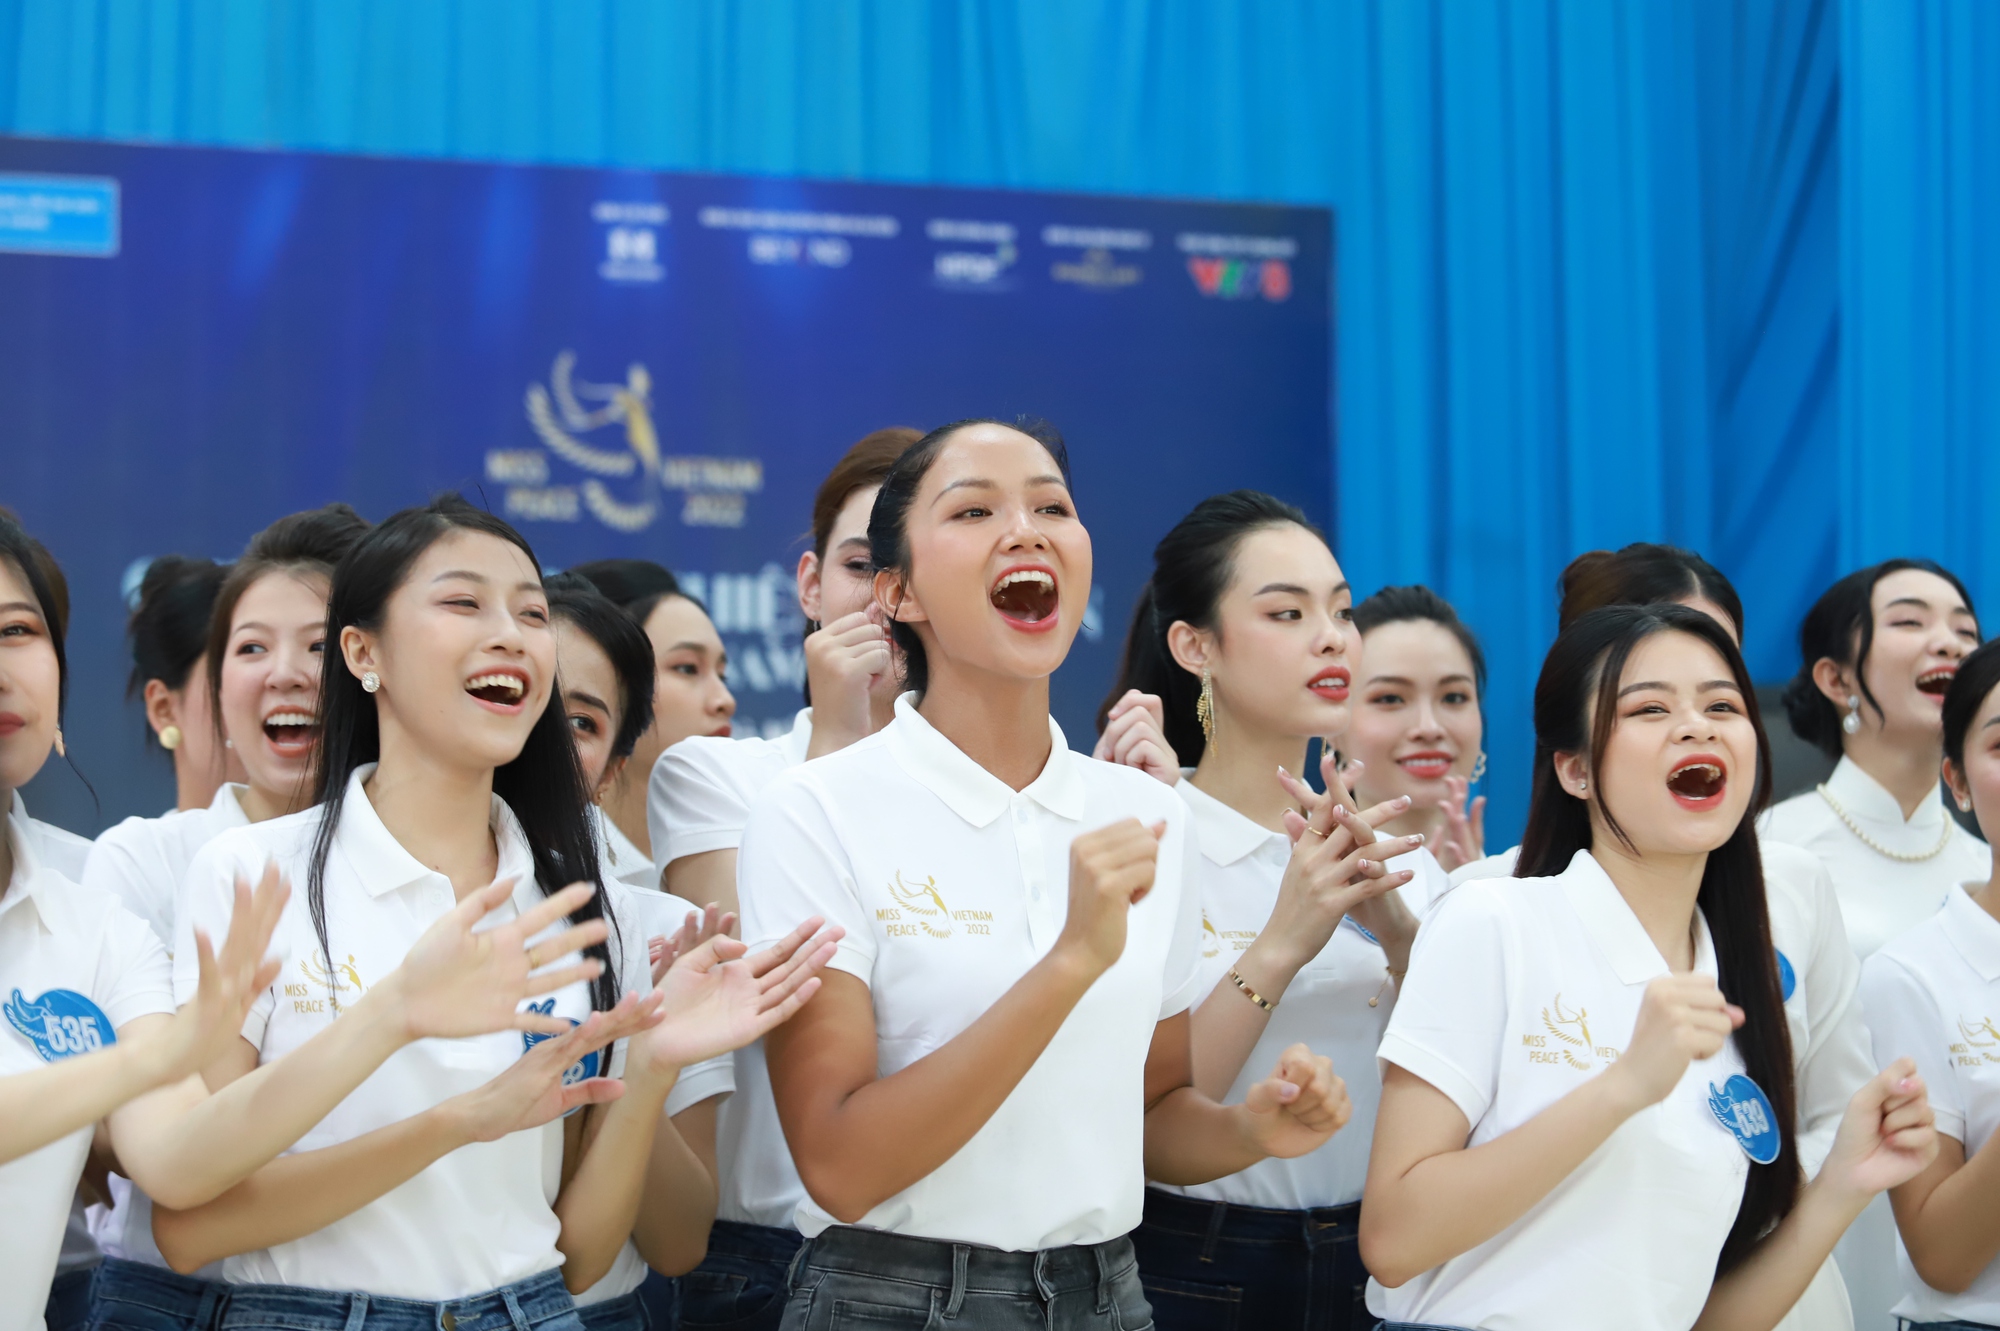 BTC Miss Peace Vietnam – Hoa hậu Hòa bình Việt Nam 2022 phản ứng thế nào trước án phạt 55 triệu? - Ảnh 1.